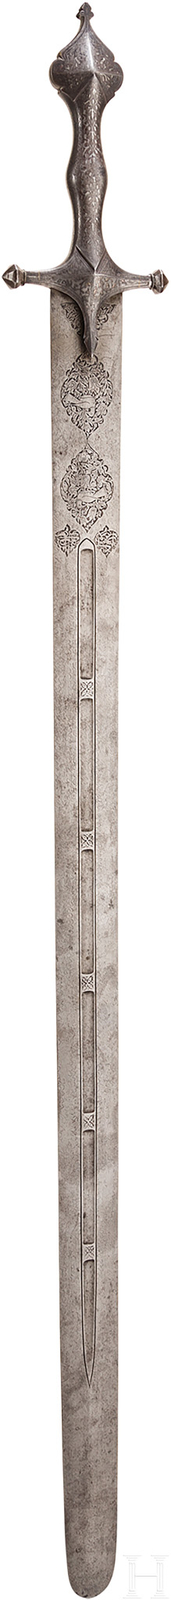 Silbertauschiertes Schwert, Persien, 19. Jhdt.